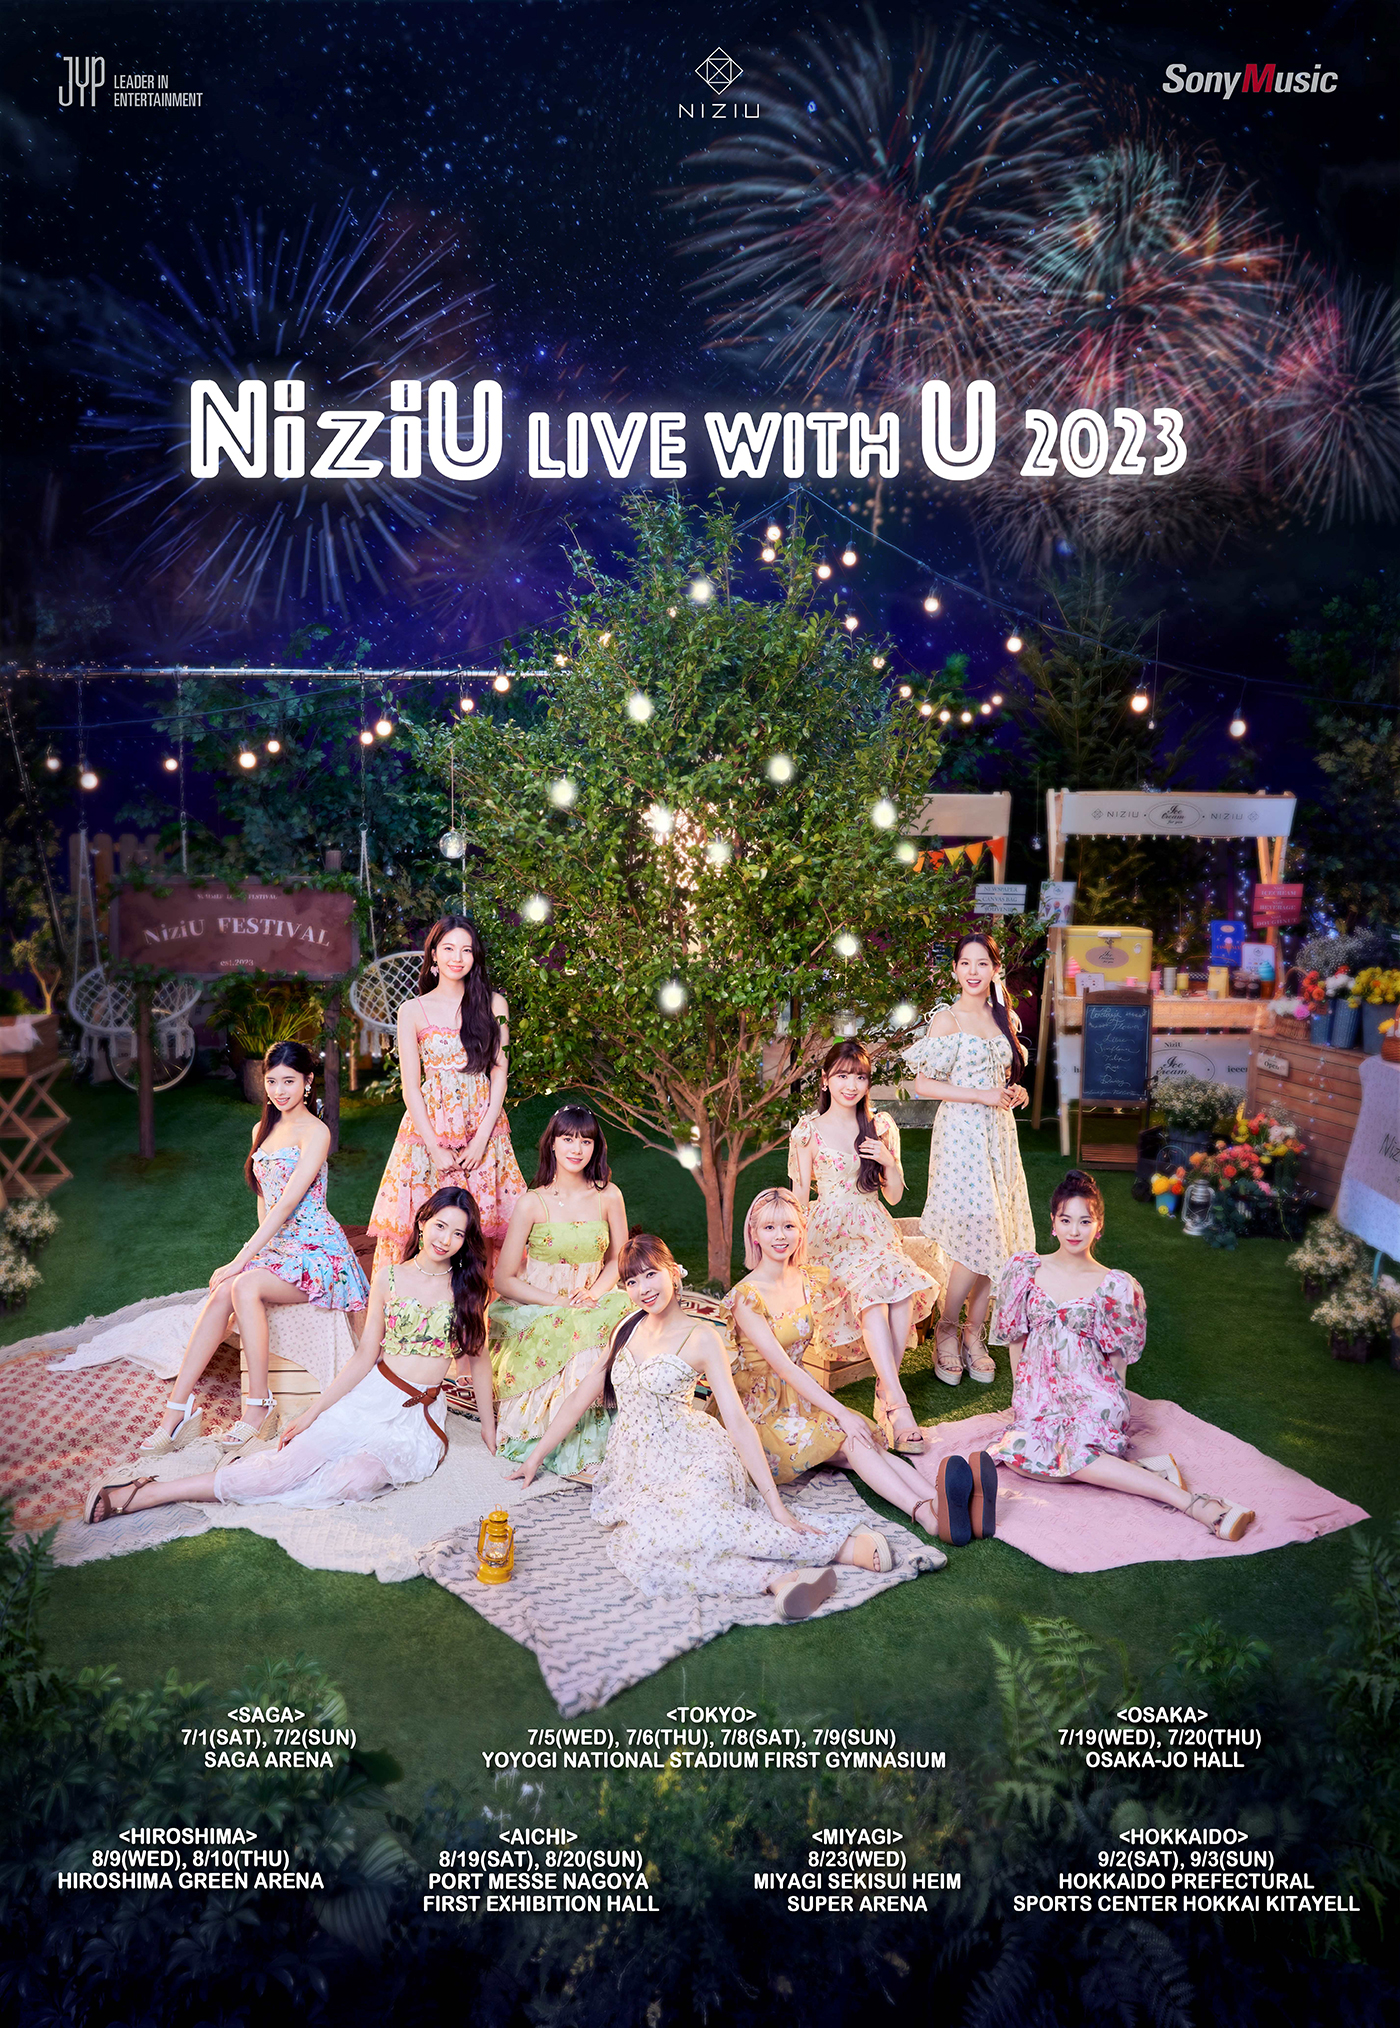 NiziU、代々木第一体育館4DAYを含む2ndライブツアー『NiziU Live with U 2023』開催決定